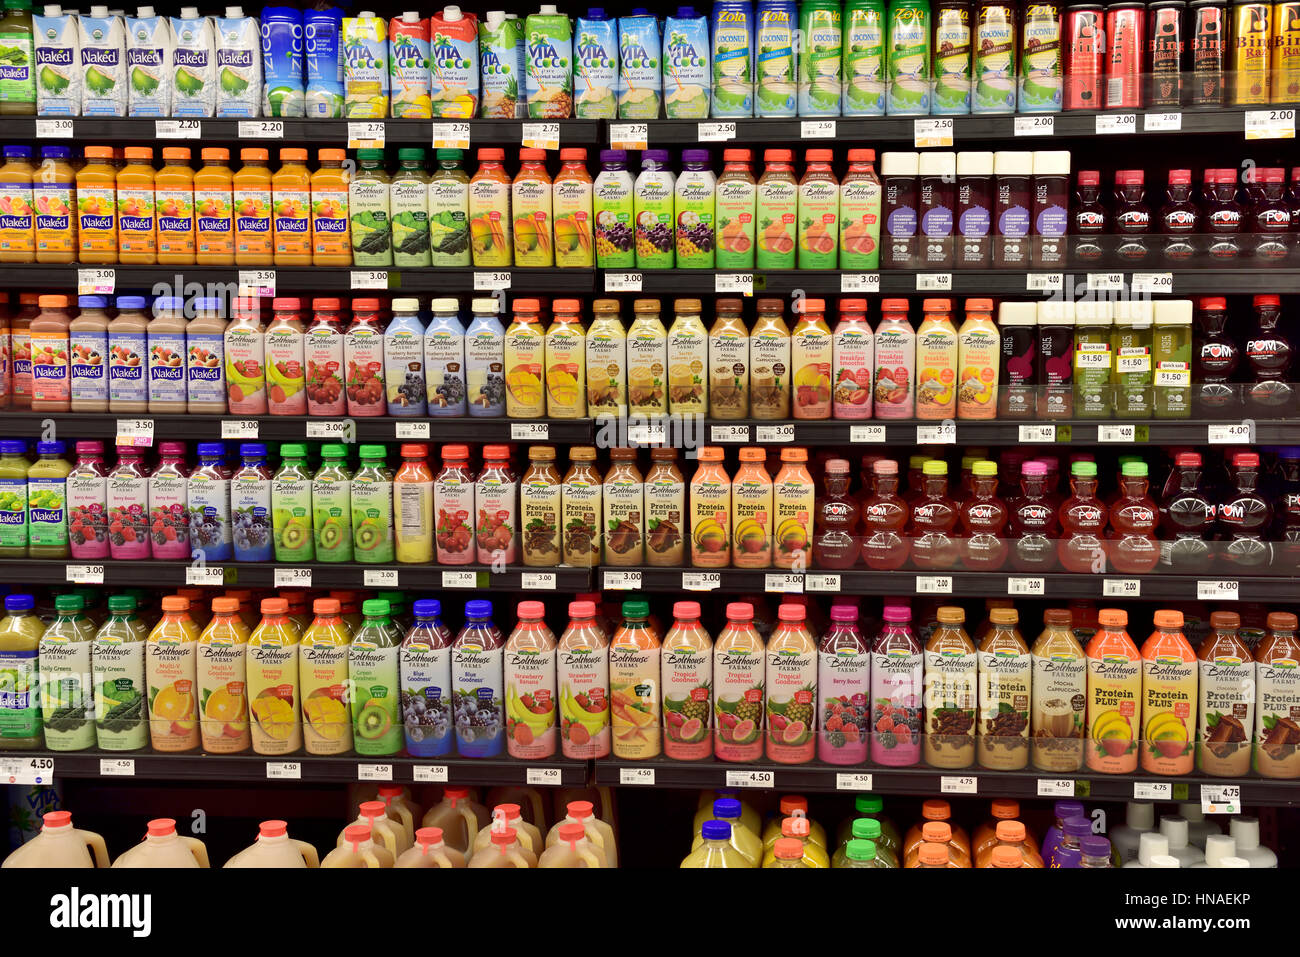 Bottles of fruit drinks on supermarket shelves Stock Photo